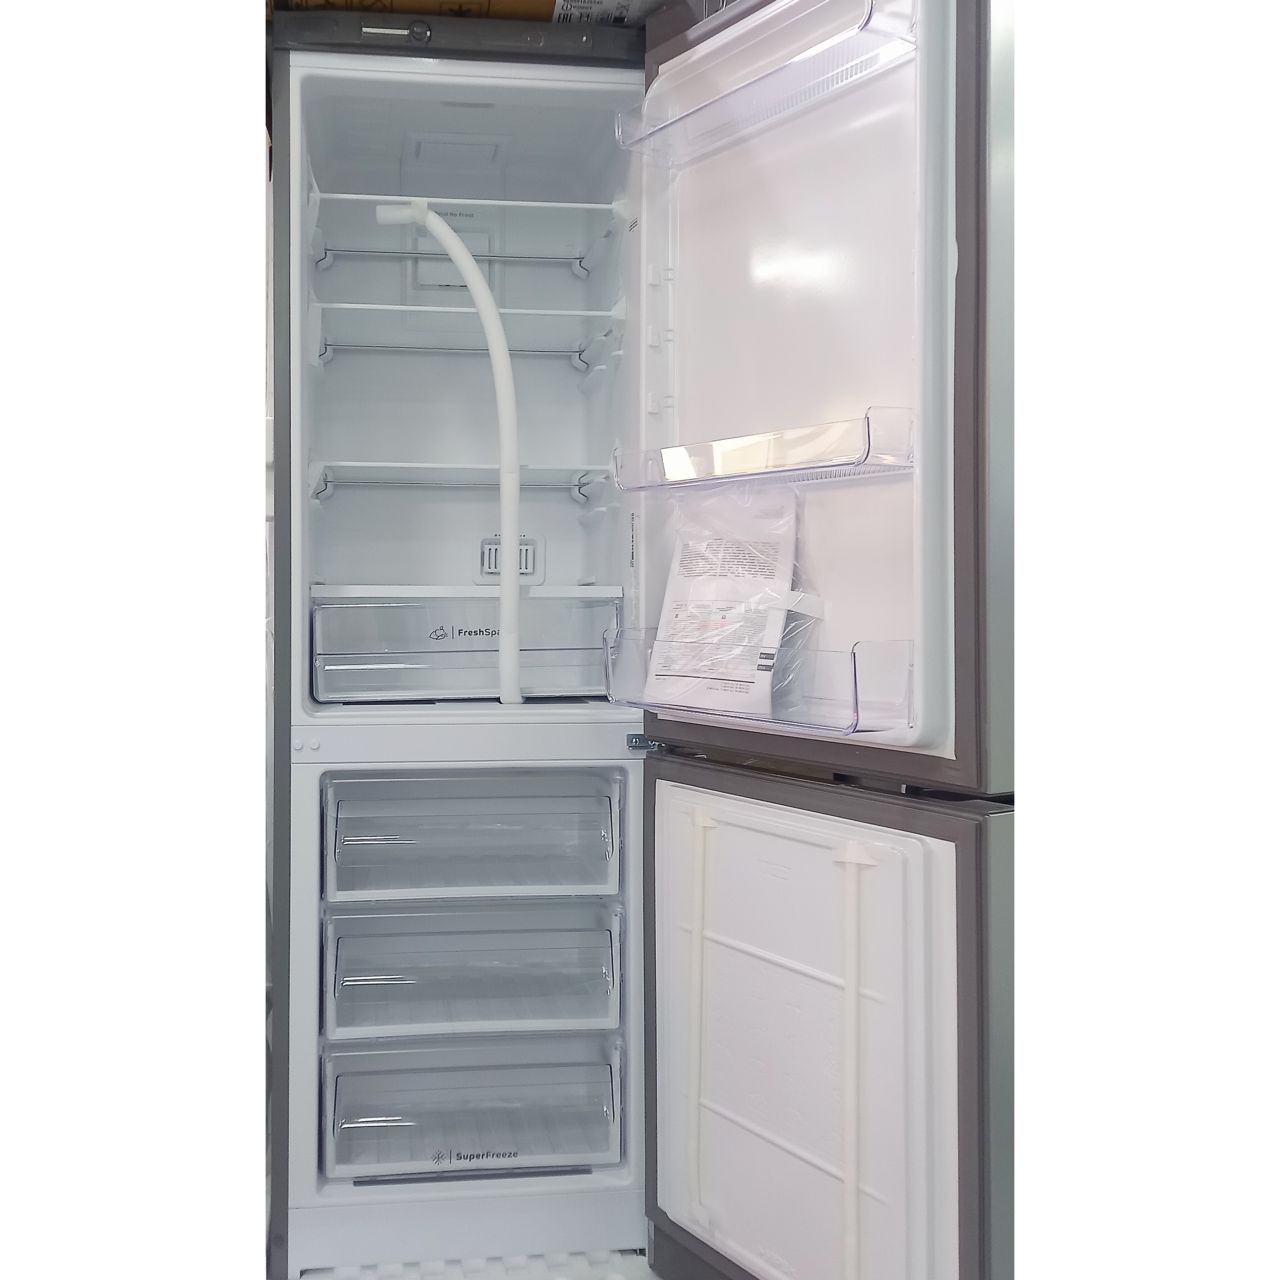 Холодильник двухкамерный Indesit 298 литров